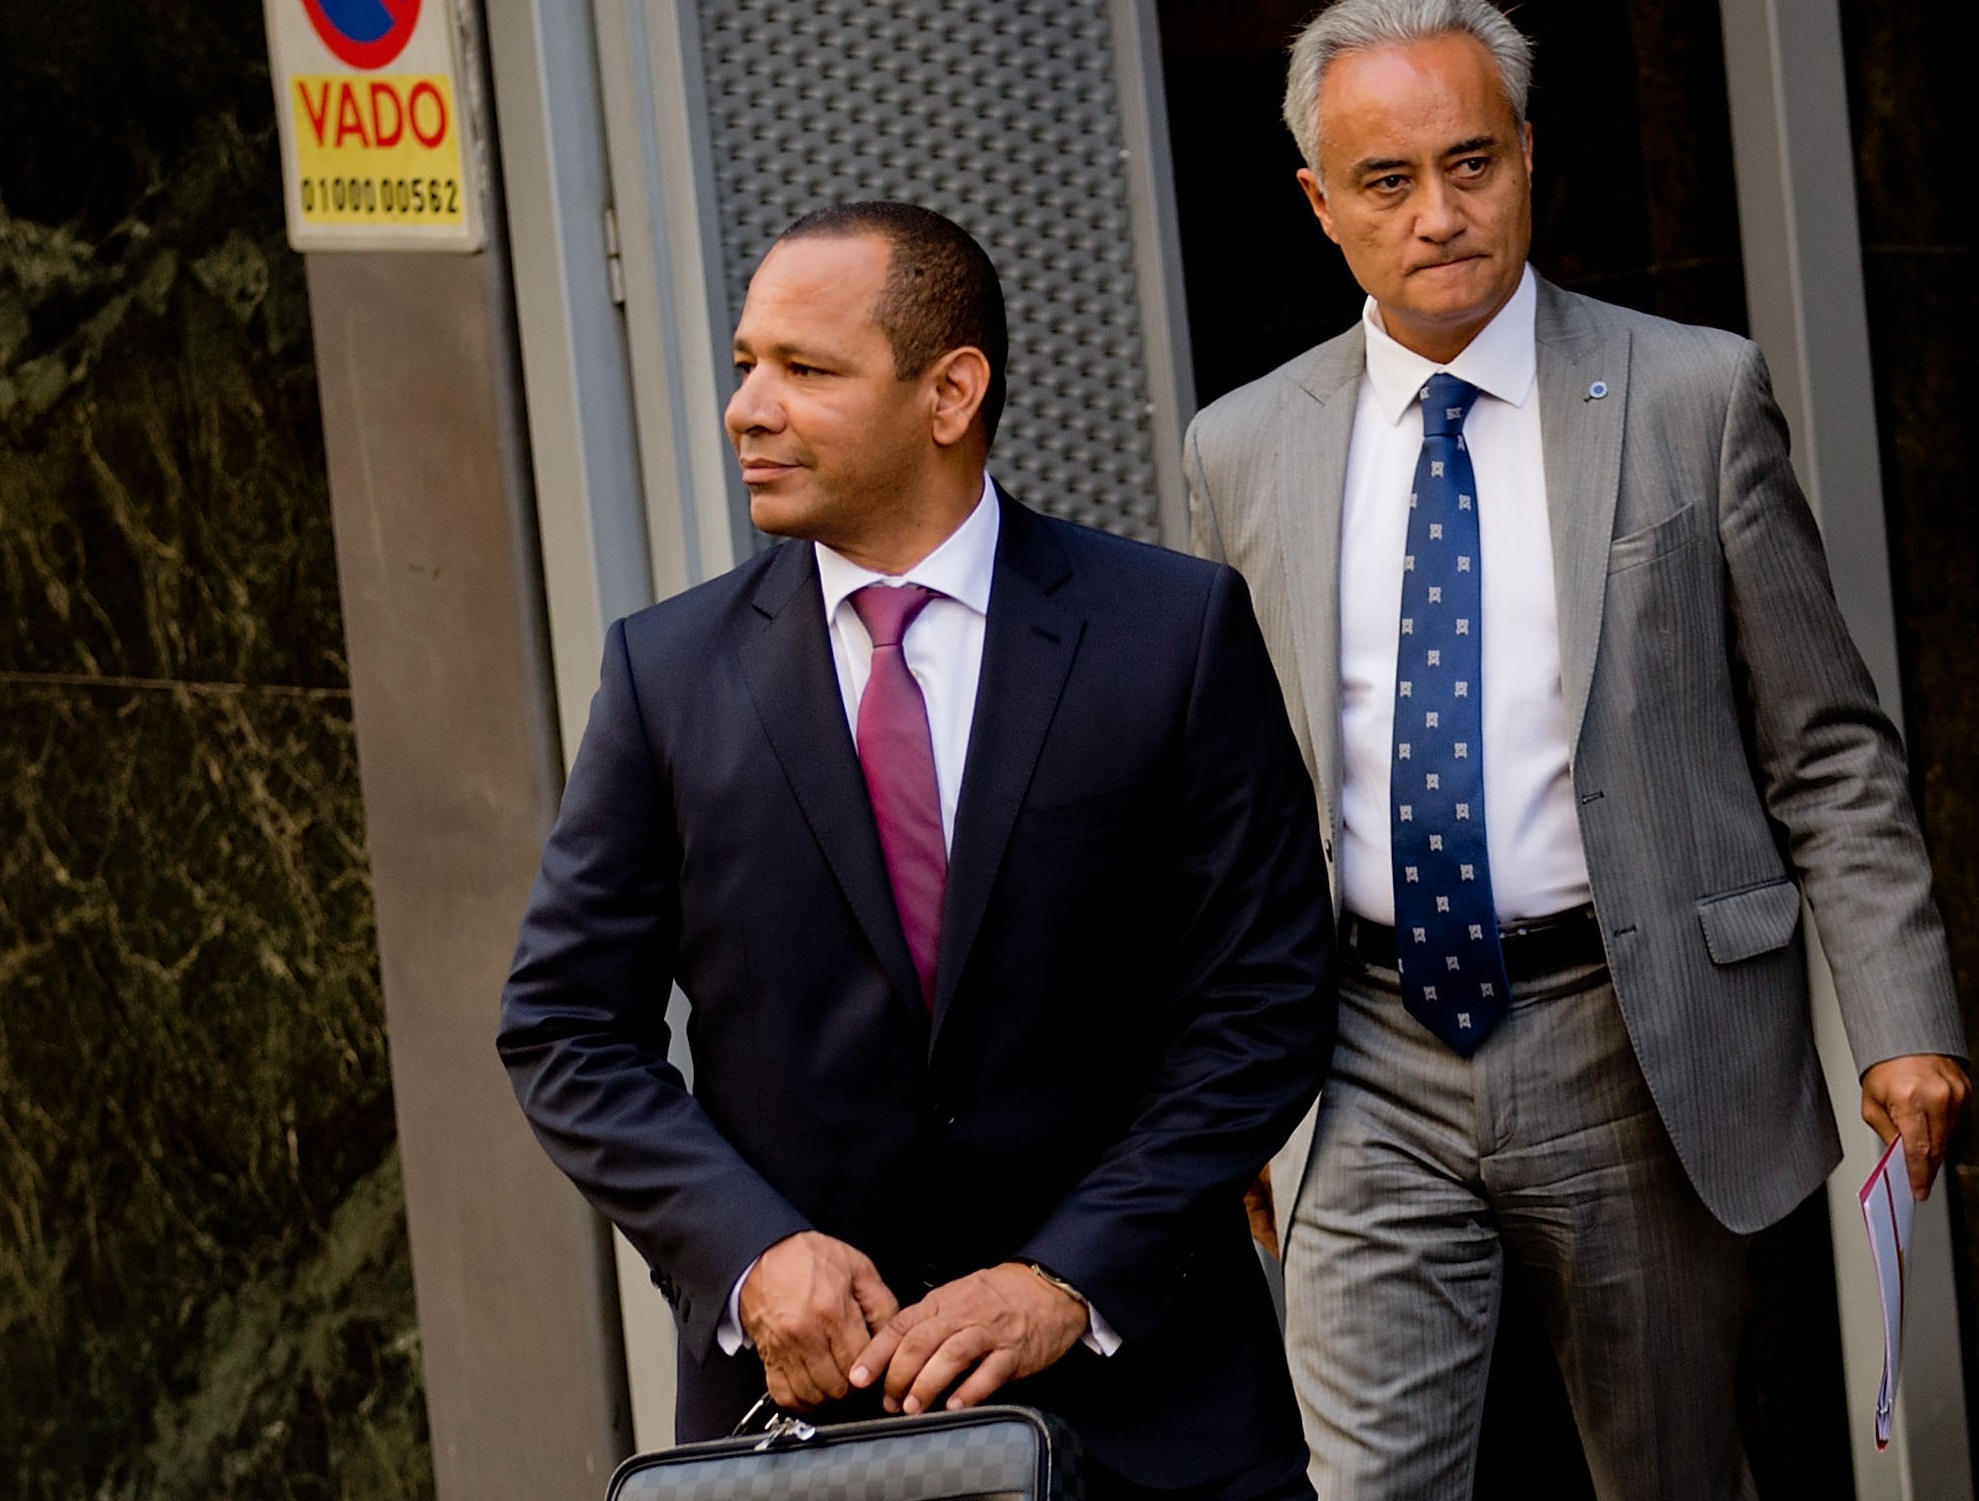 Tatăl lui Neymar s-a întâlnit în secret cu președintele Barcelonei, la un hotel. Presa spaniolă a aflat totul